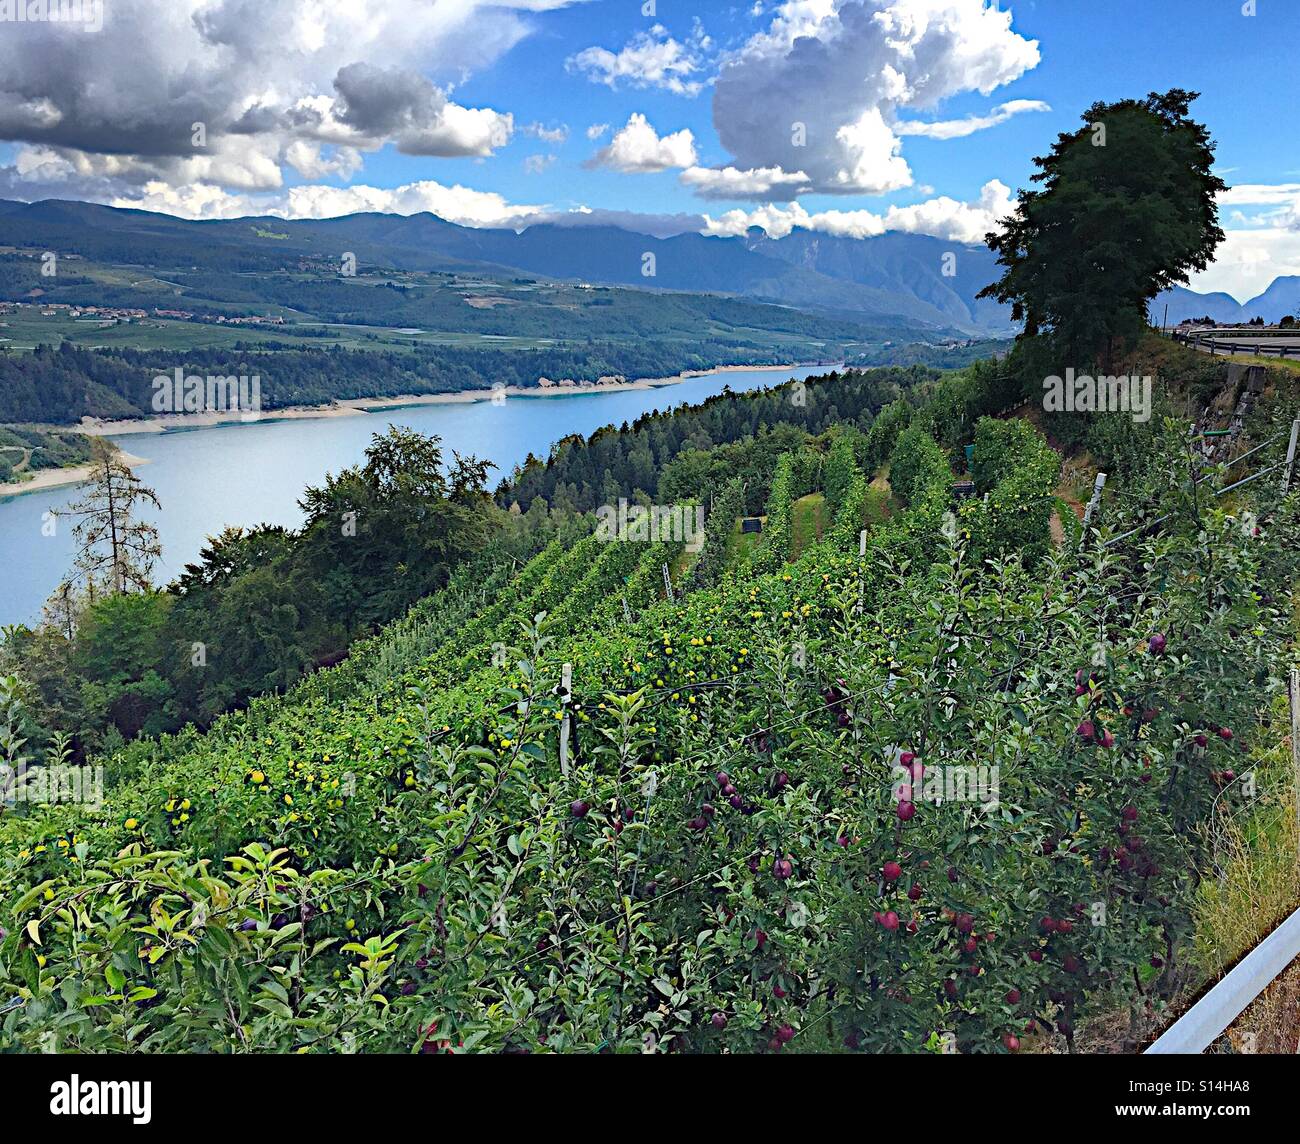 Apple stagione di raccolta in Trentino Foto Stock